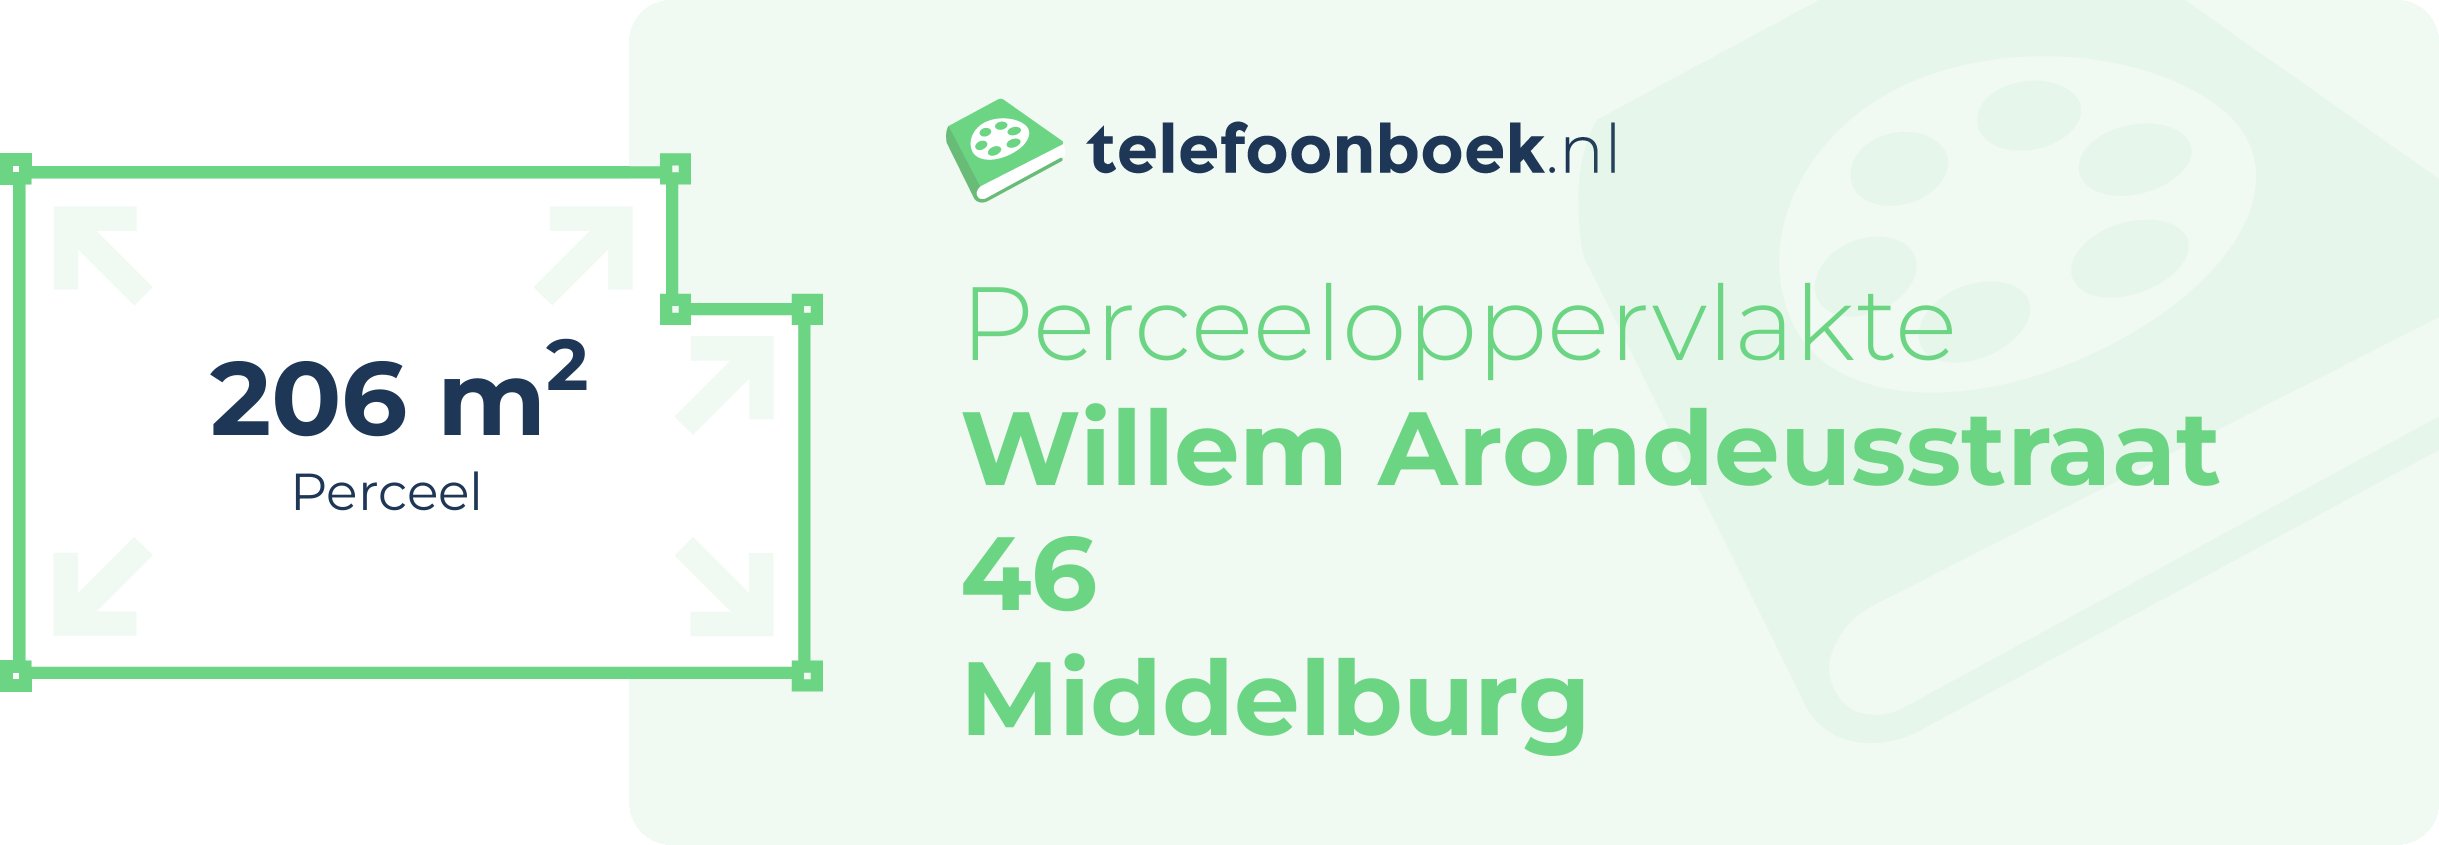 Perceeloppervlakte Willem Arondeusstraat 46 Middelburg